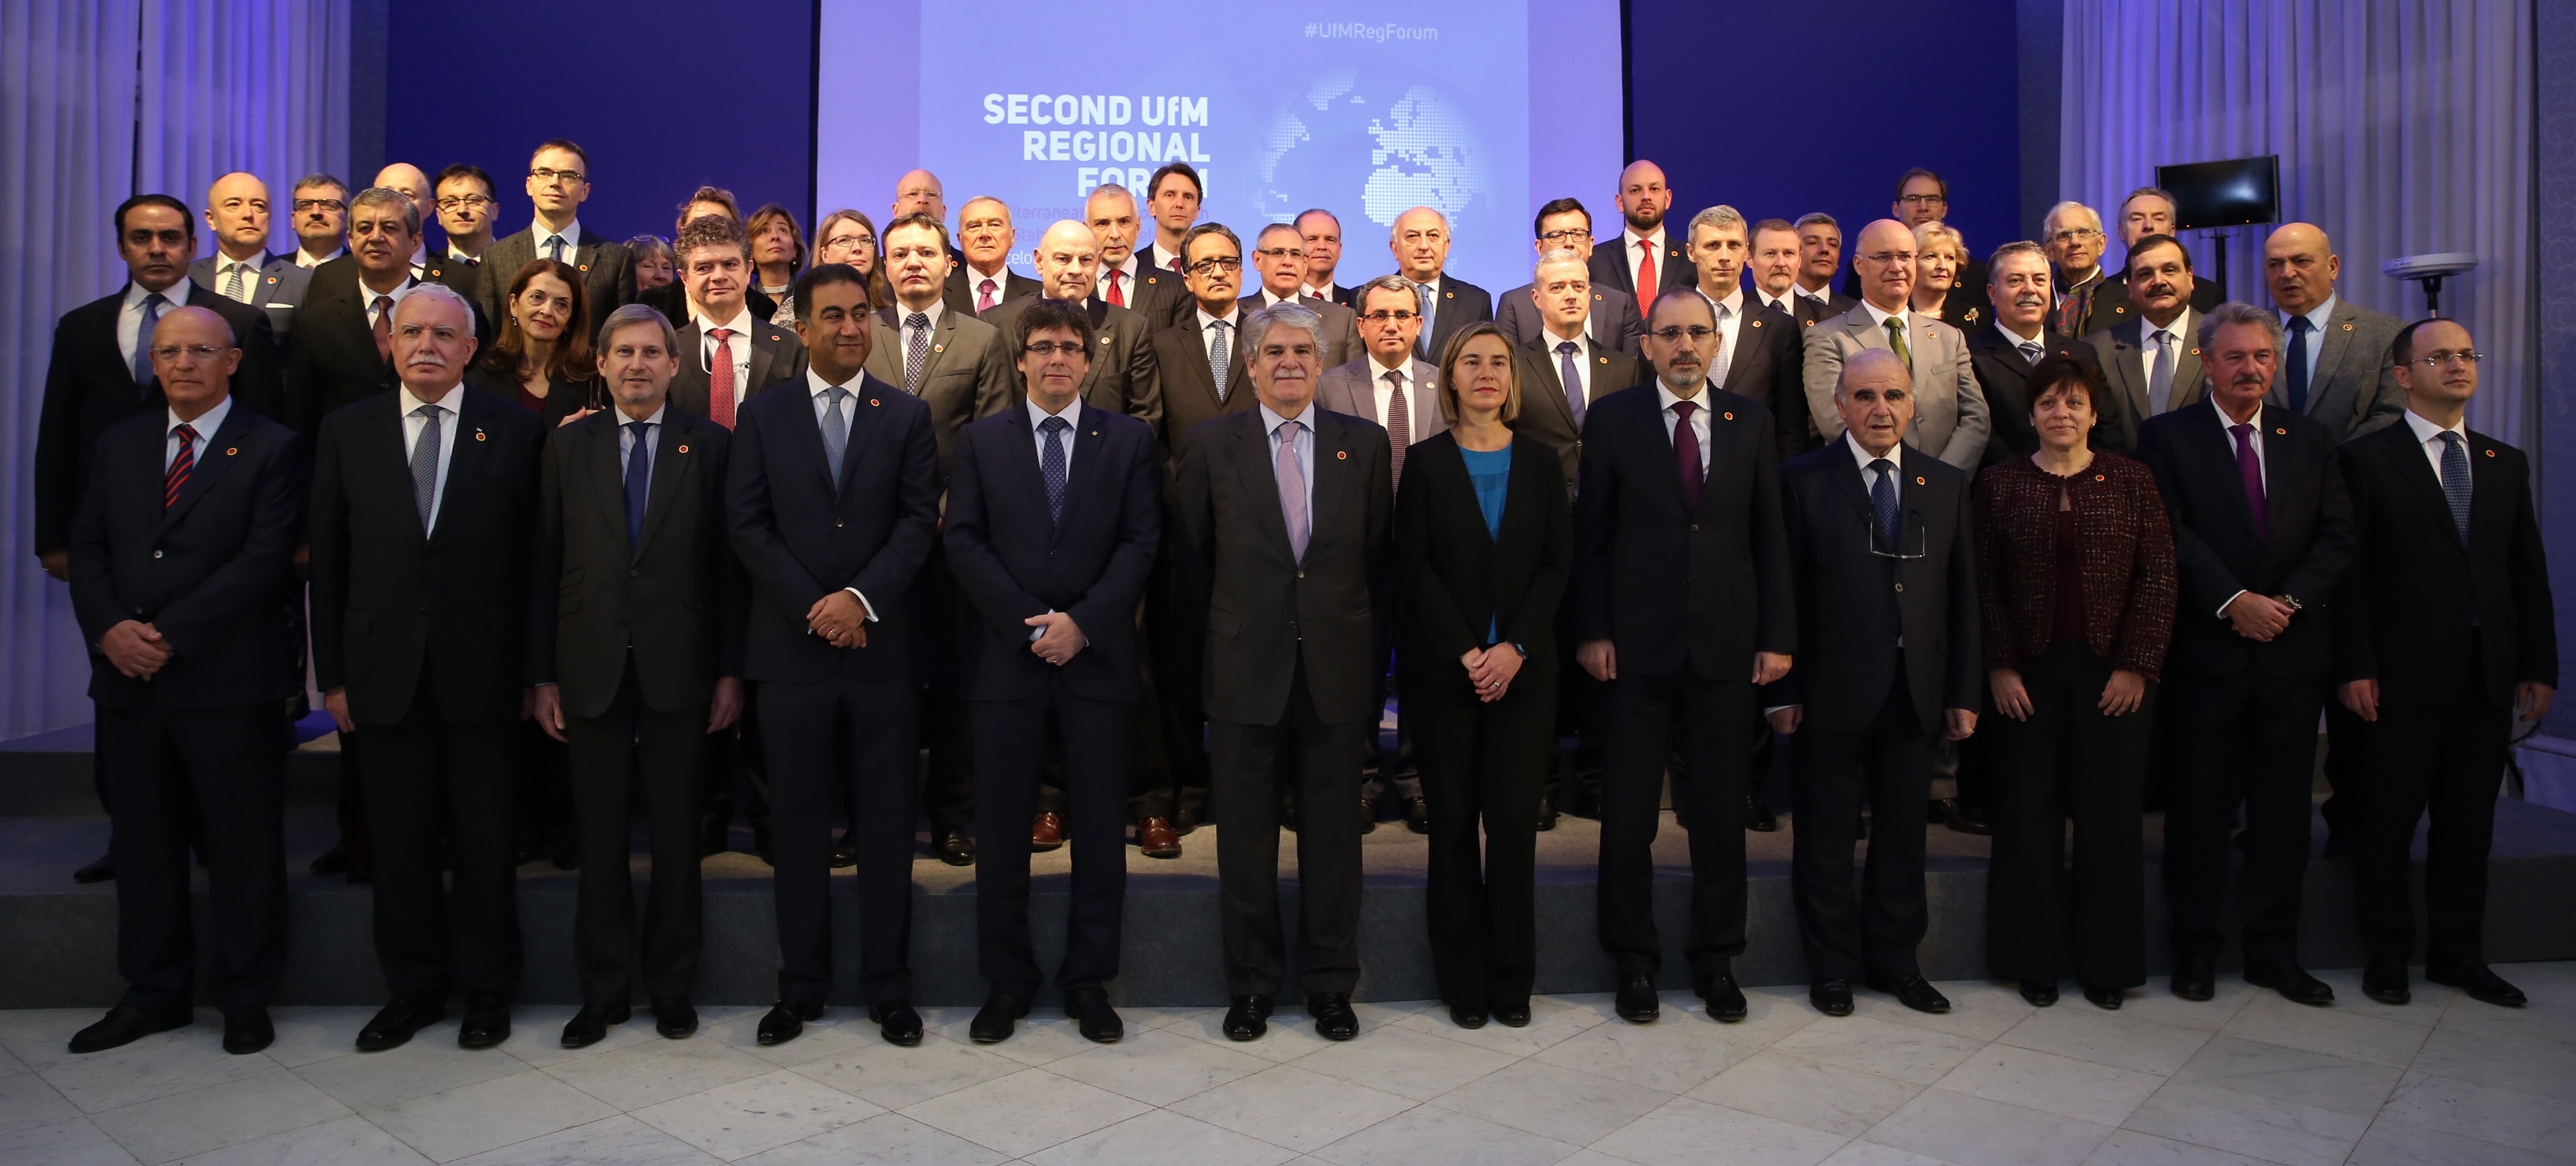 Borrell encapçala la reunió de la Unió per la Mediterrània a Barcelona sense presència del Govern